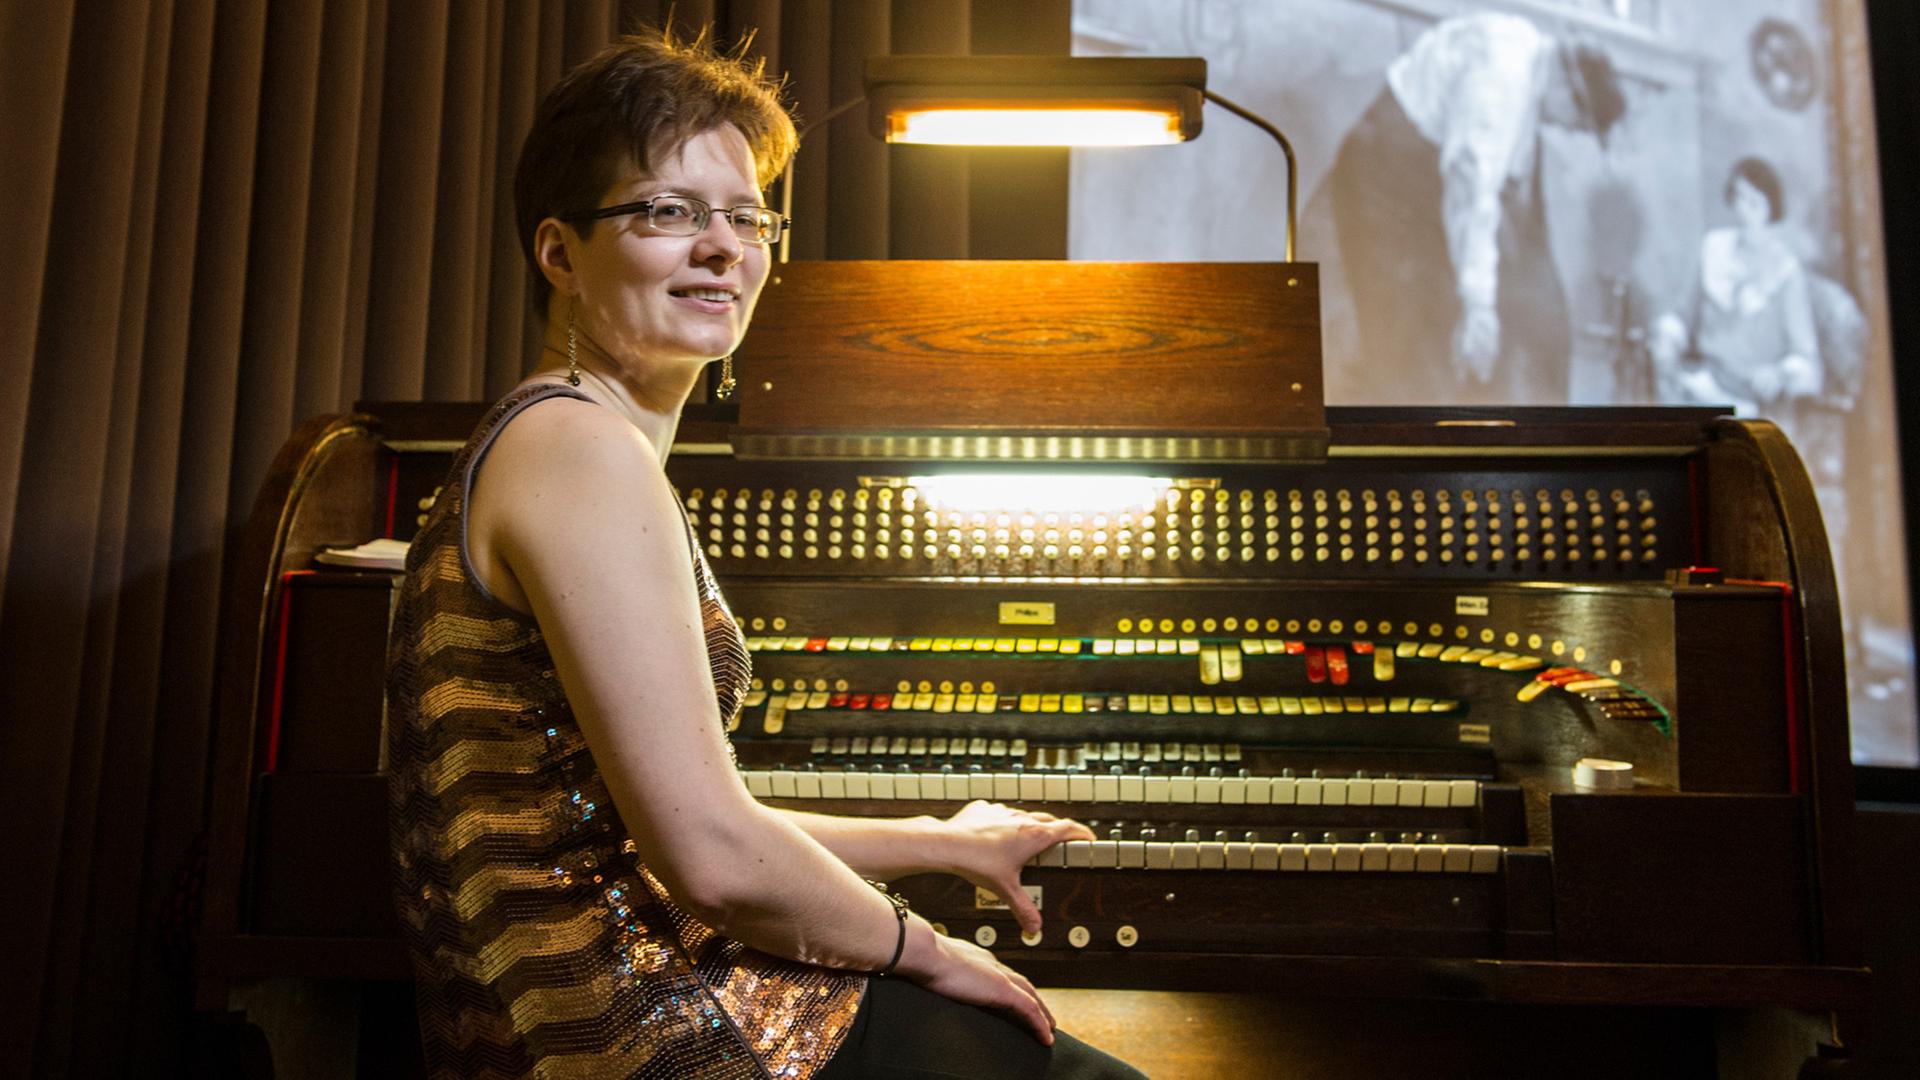 Organistin Anna Vavilkina gehörte zur Jury des ersten Internationalen Kino-Orgel-Wettbewerbs in Berlin.